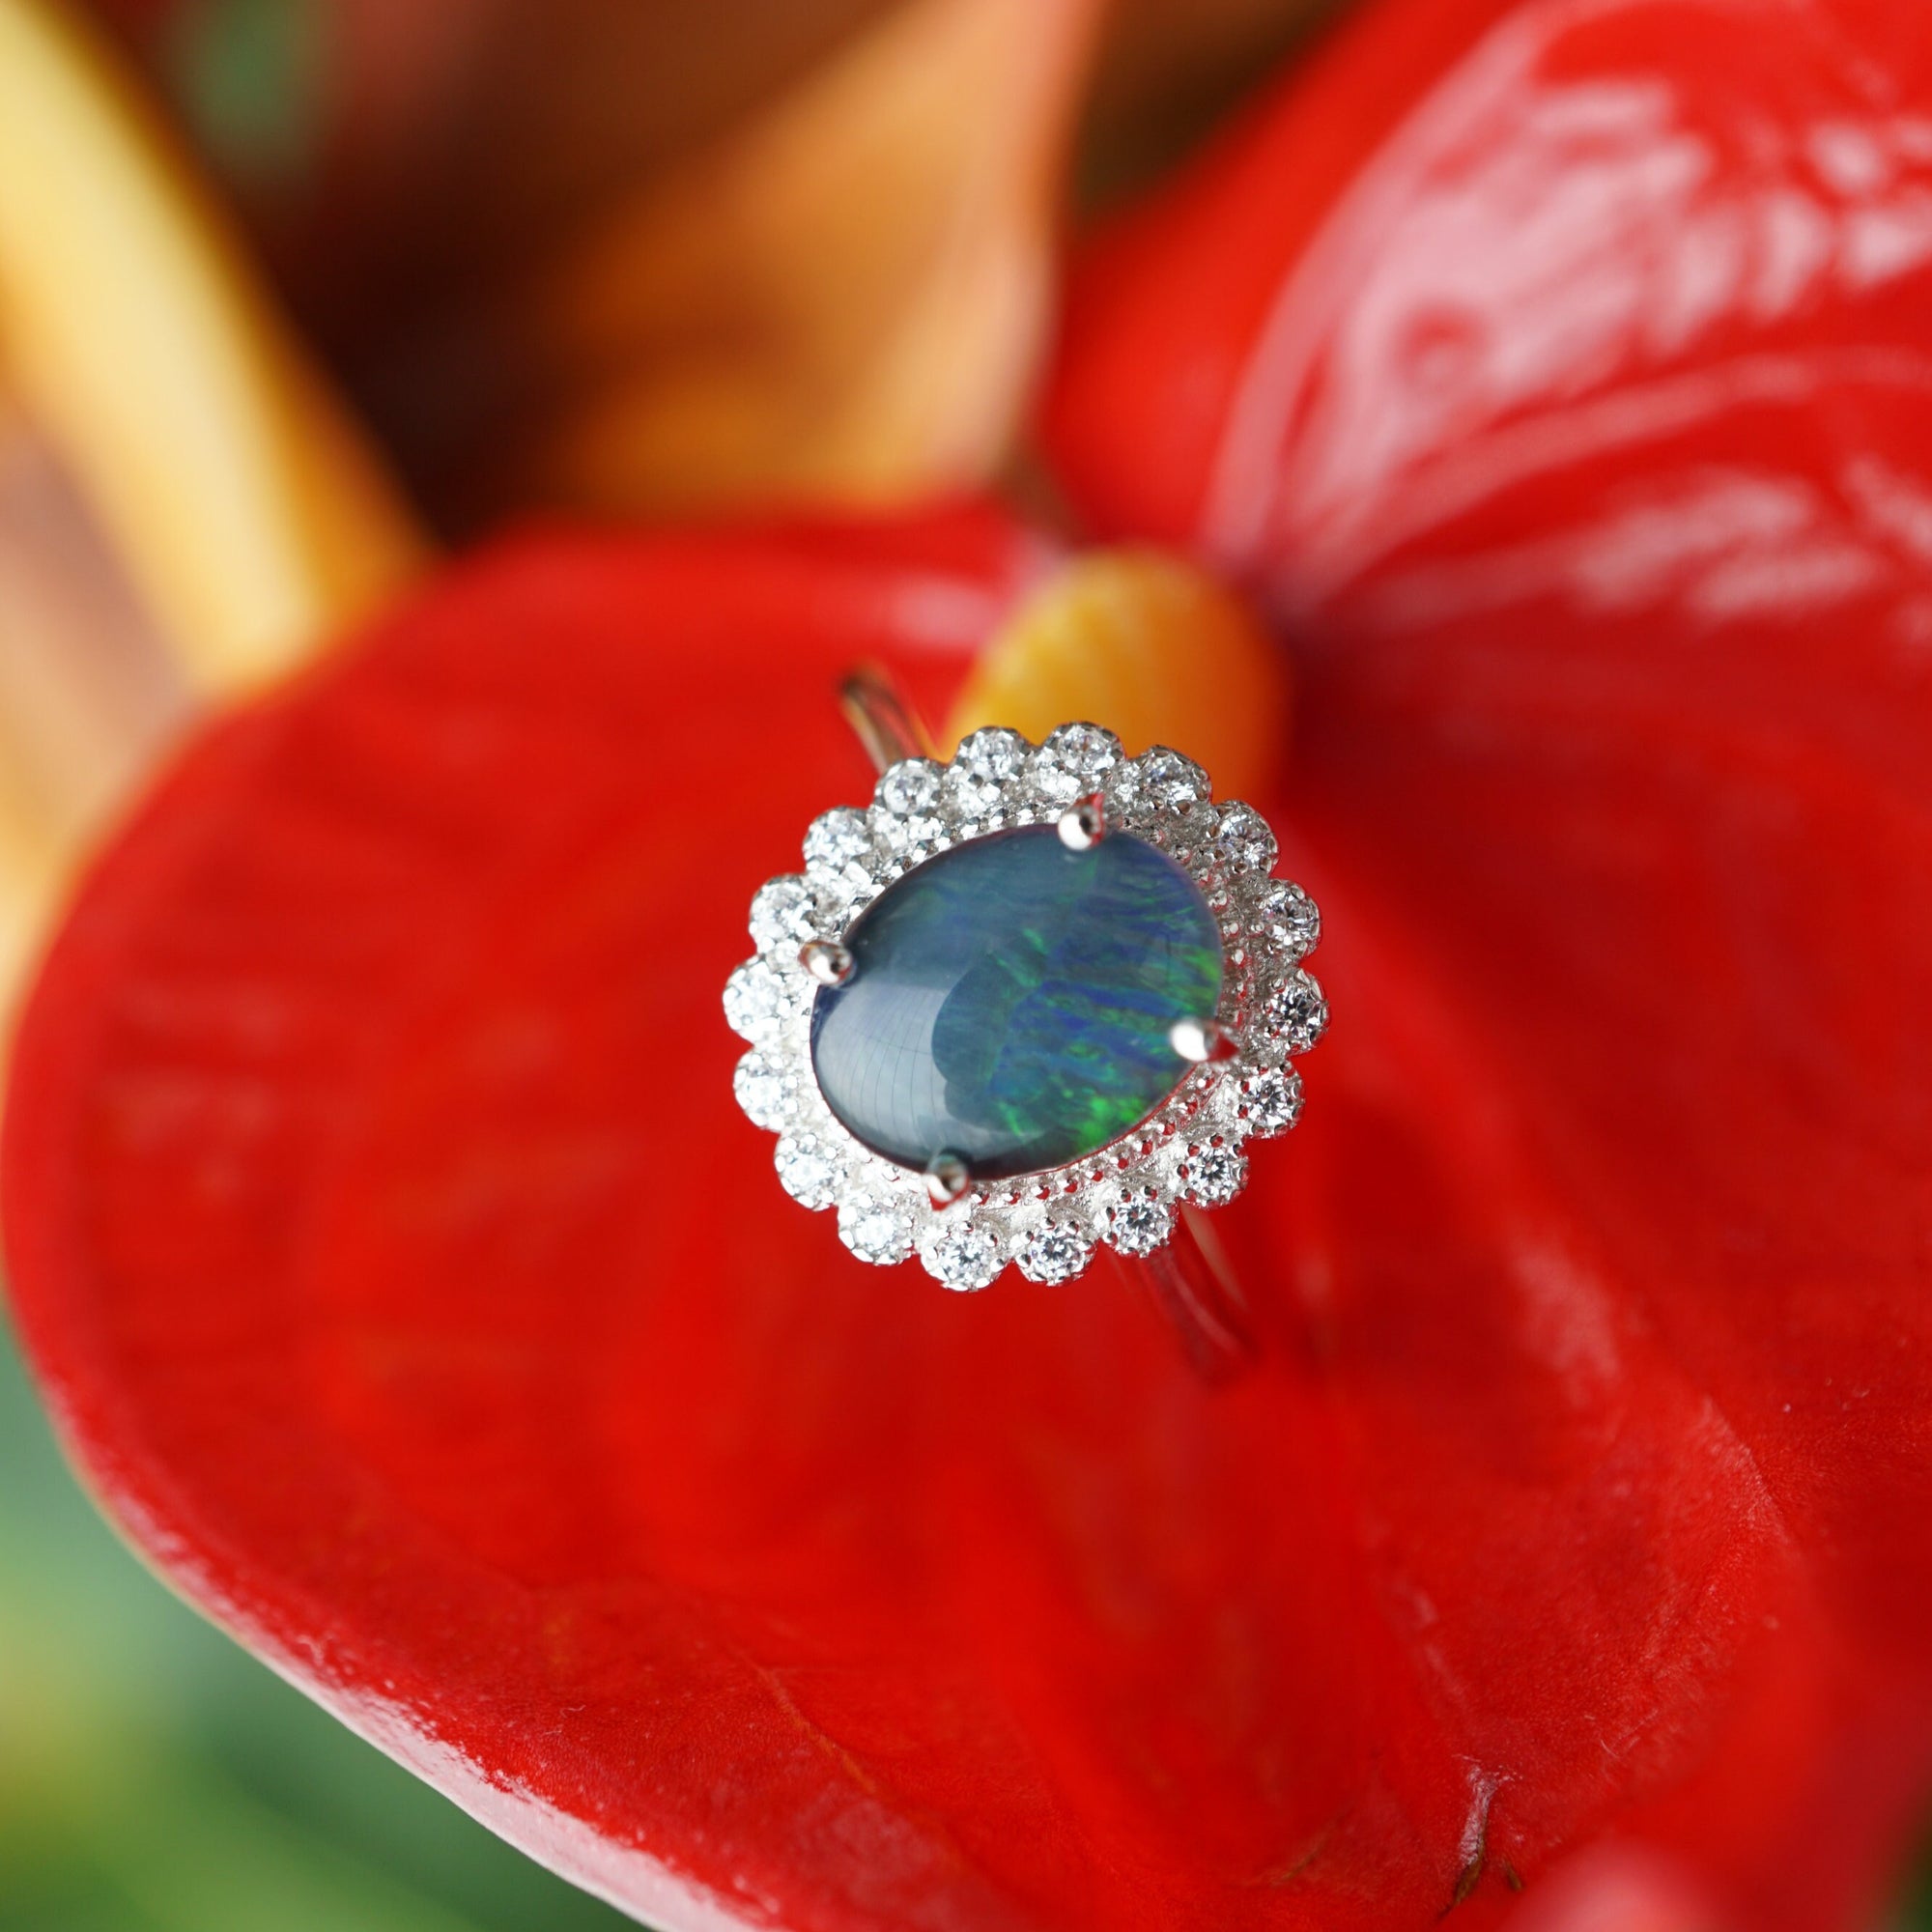 Genuine Australian Blue Opal Ring - Sterling Silver, 7x9mm-Vsabel Jewellery